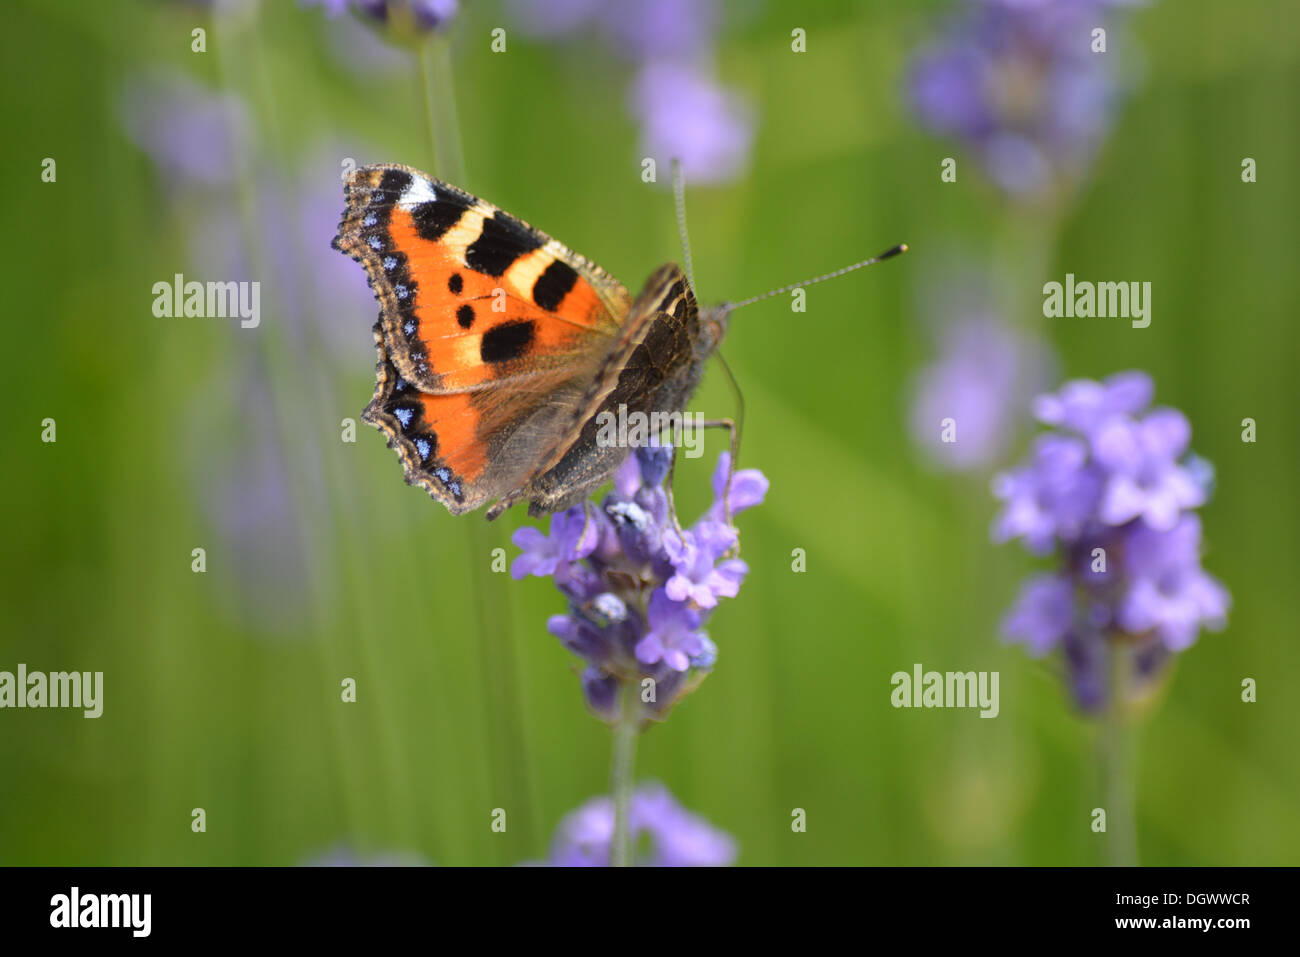 Beautiful toitoiseshell butterfly on lavendar. Stock Photo